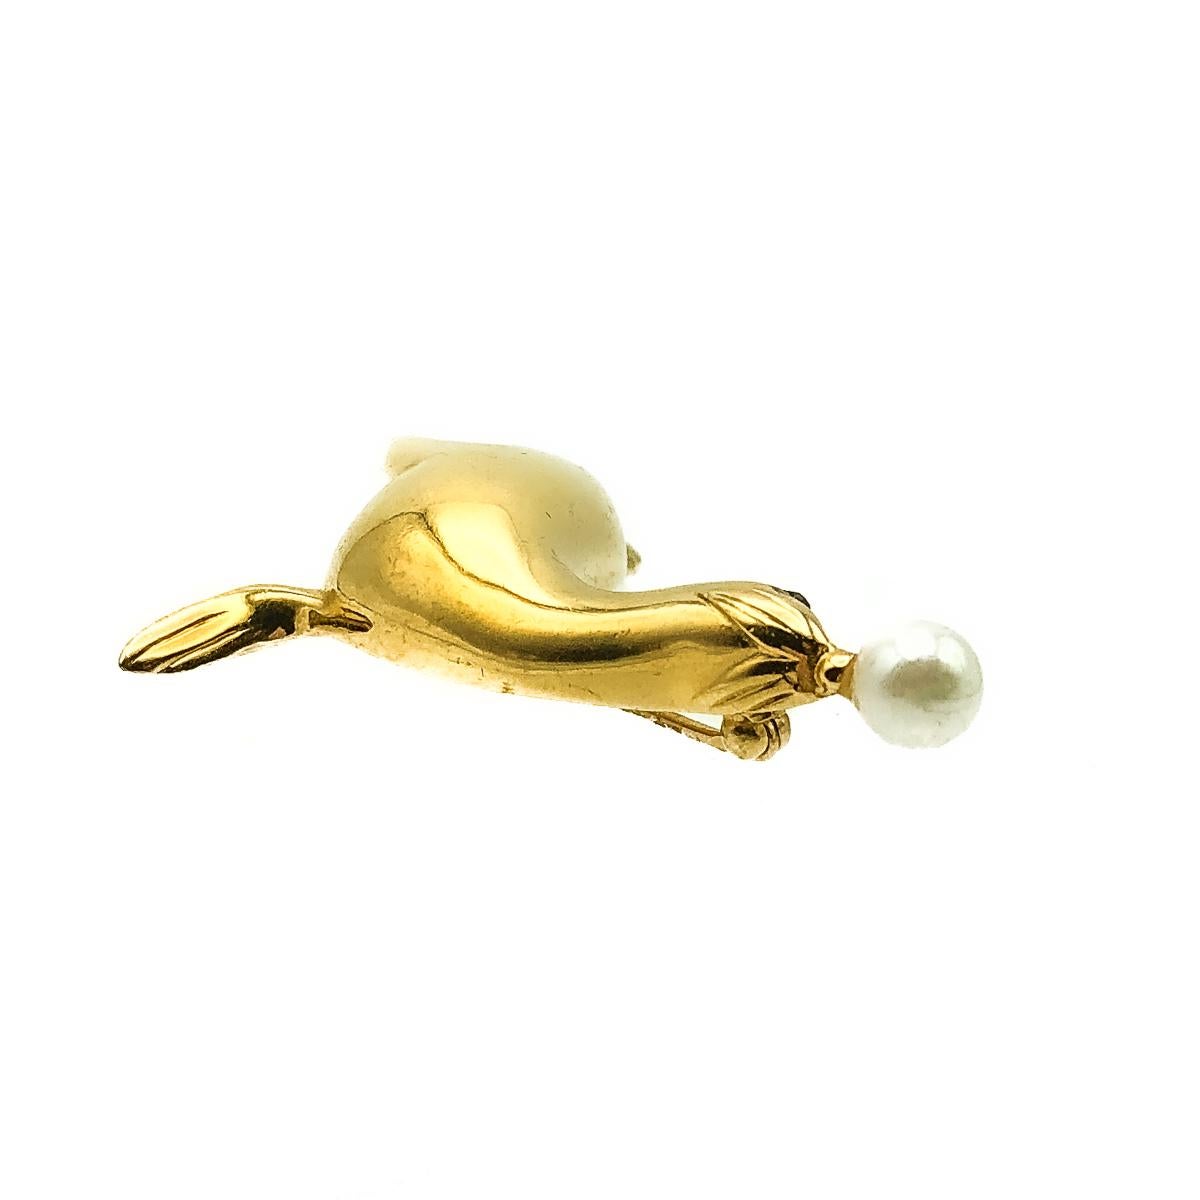 Vintage D'Orlan Sea Lion Brooch. Réalisé en métal plaqué or et en fausse perle simulée. Une otarie super brillante porte une perle pleine sur son nez. En très bon état vintage, signé et d'environ 5cm. Une broche fantaisiste parfaite pour l'amoureux